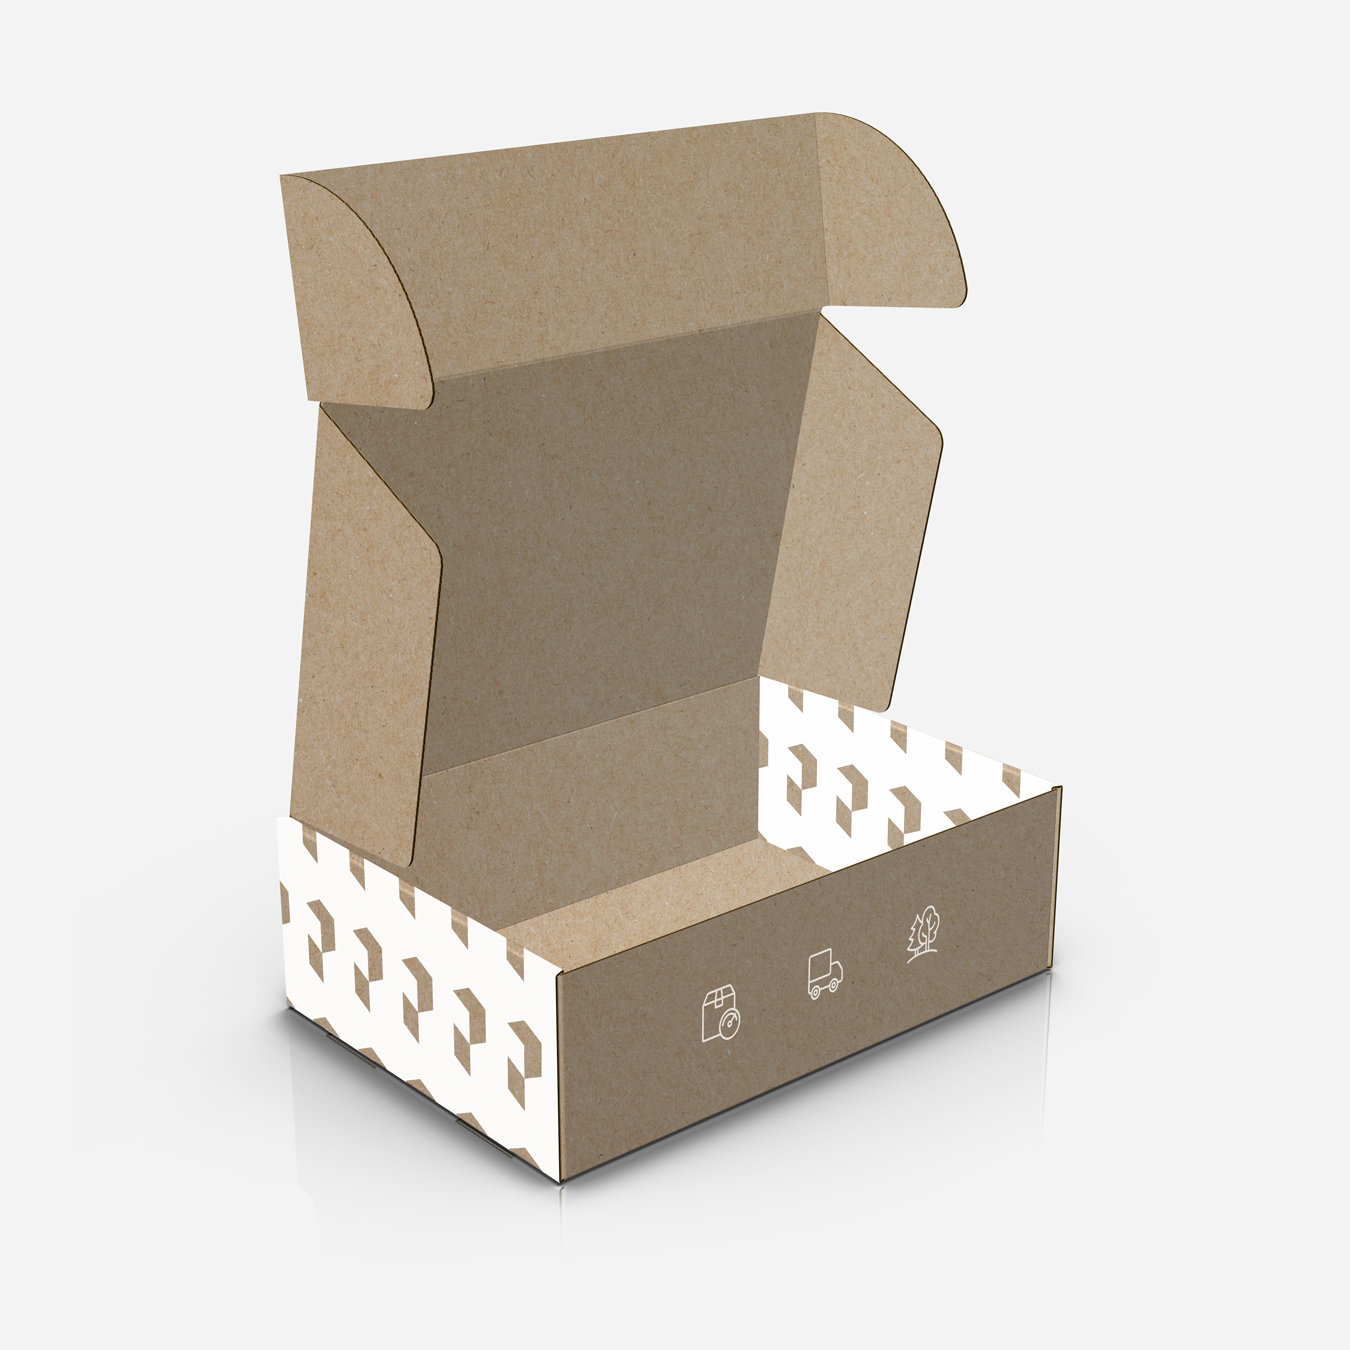 Pudełko fasonowe z logo i nadrukiem białym – ekologiczne pudełka do wysyłki ubrań.